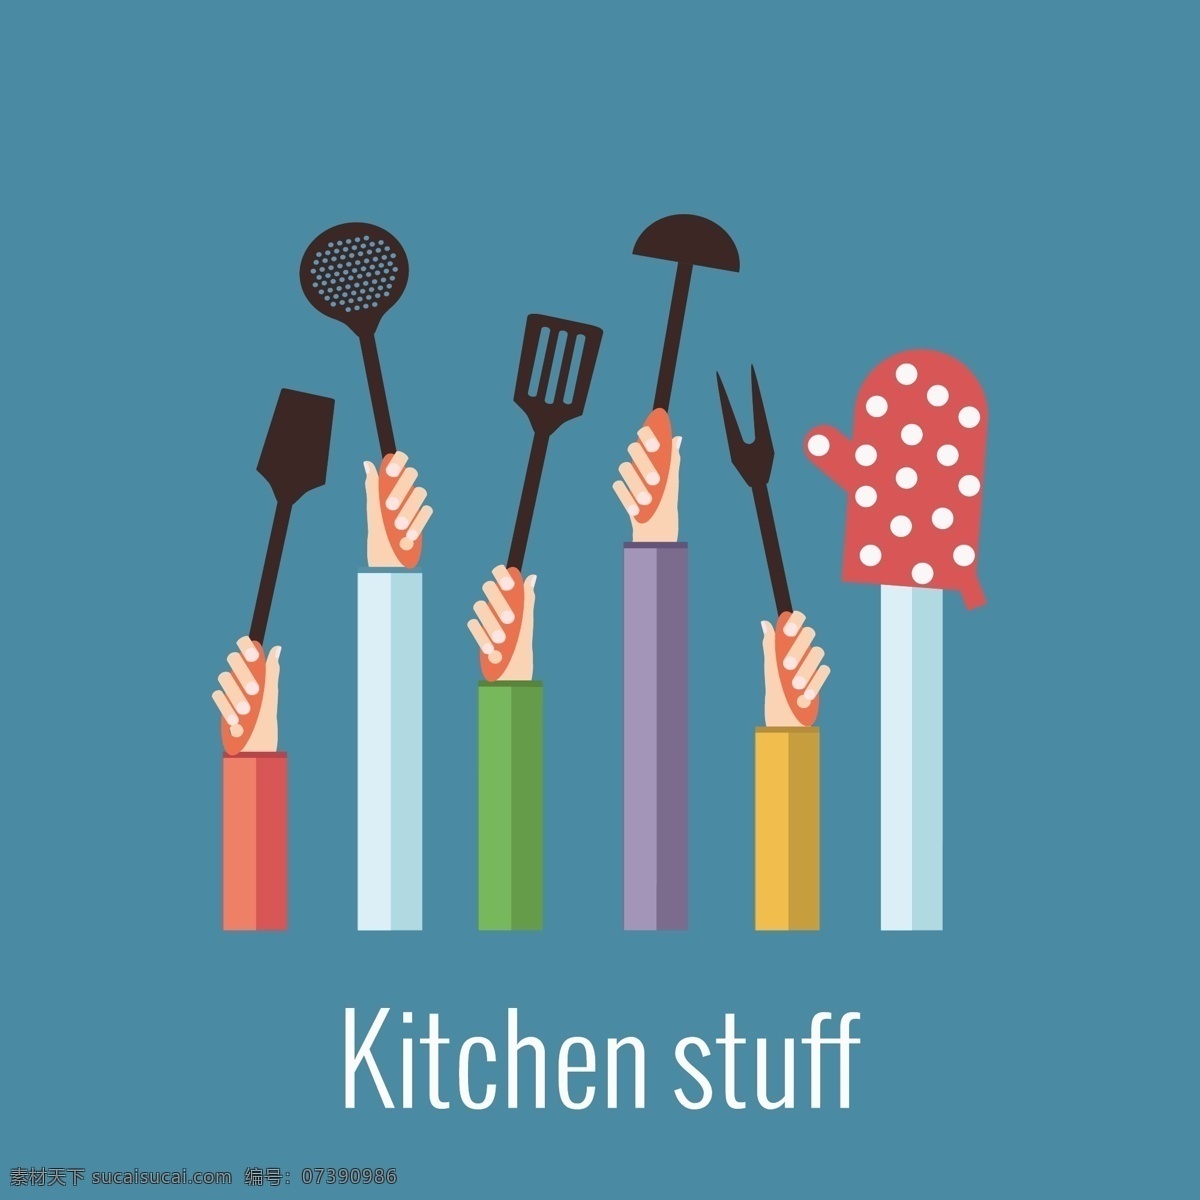 举起 炊具 手臂 手拿厨具 举起炊具的 插画 厨具 厨房 平面素材